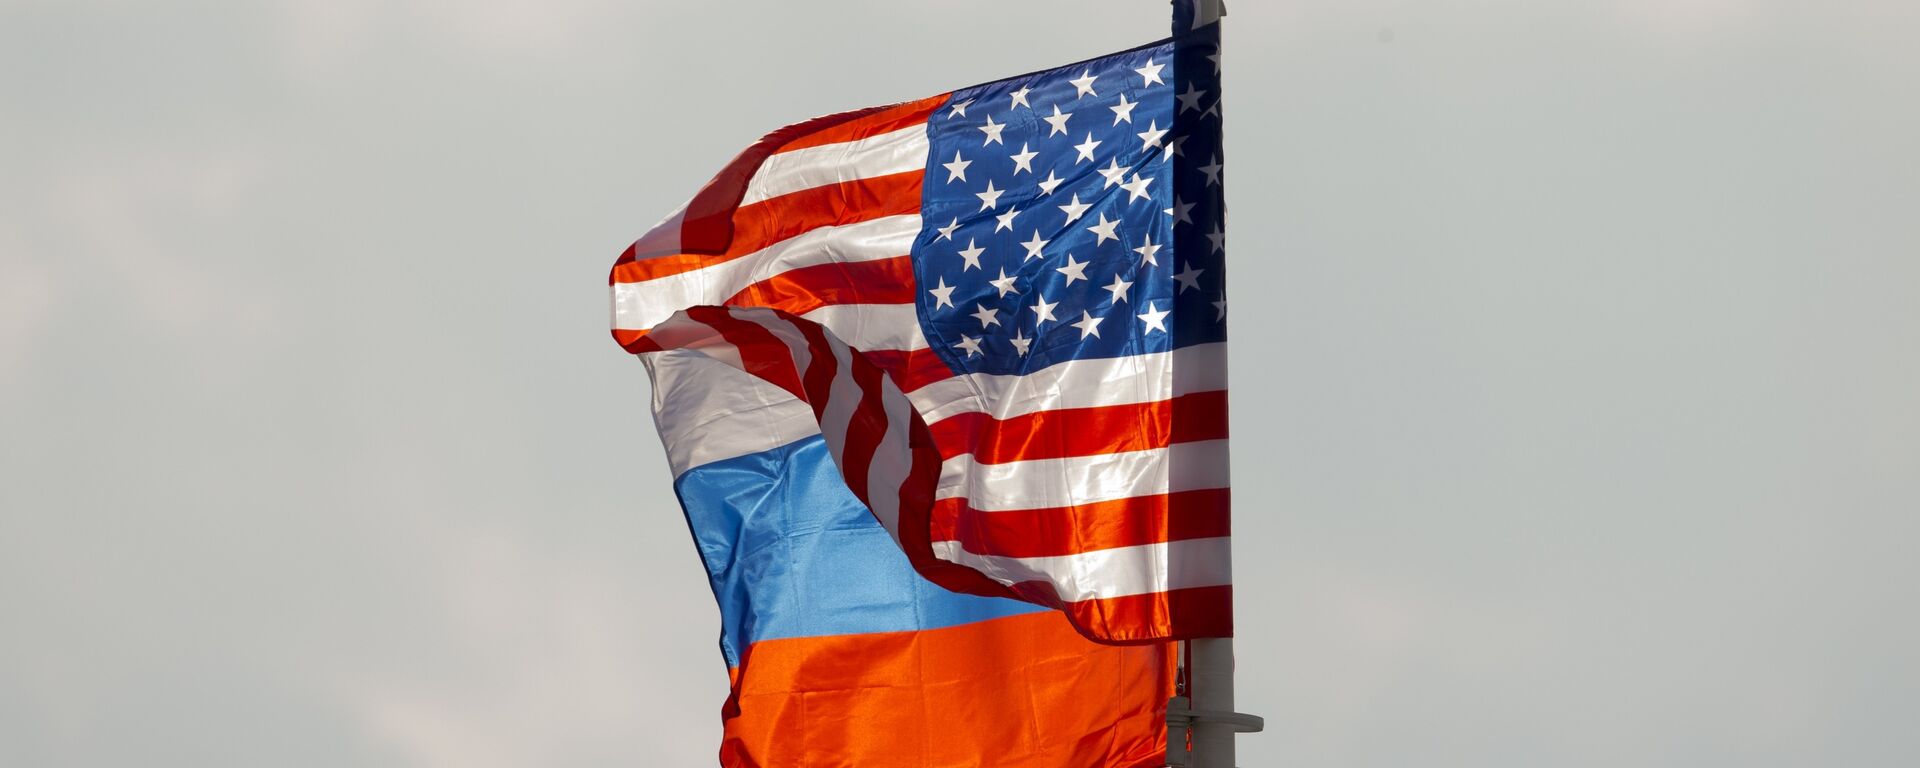 Banderas de Rusia y EEUU (archivo) - Sputnik Mundo, 1920, 17.03.2021